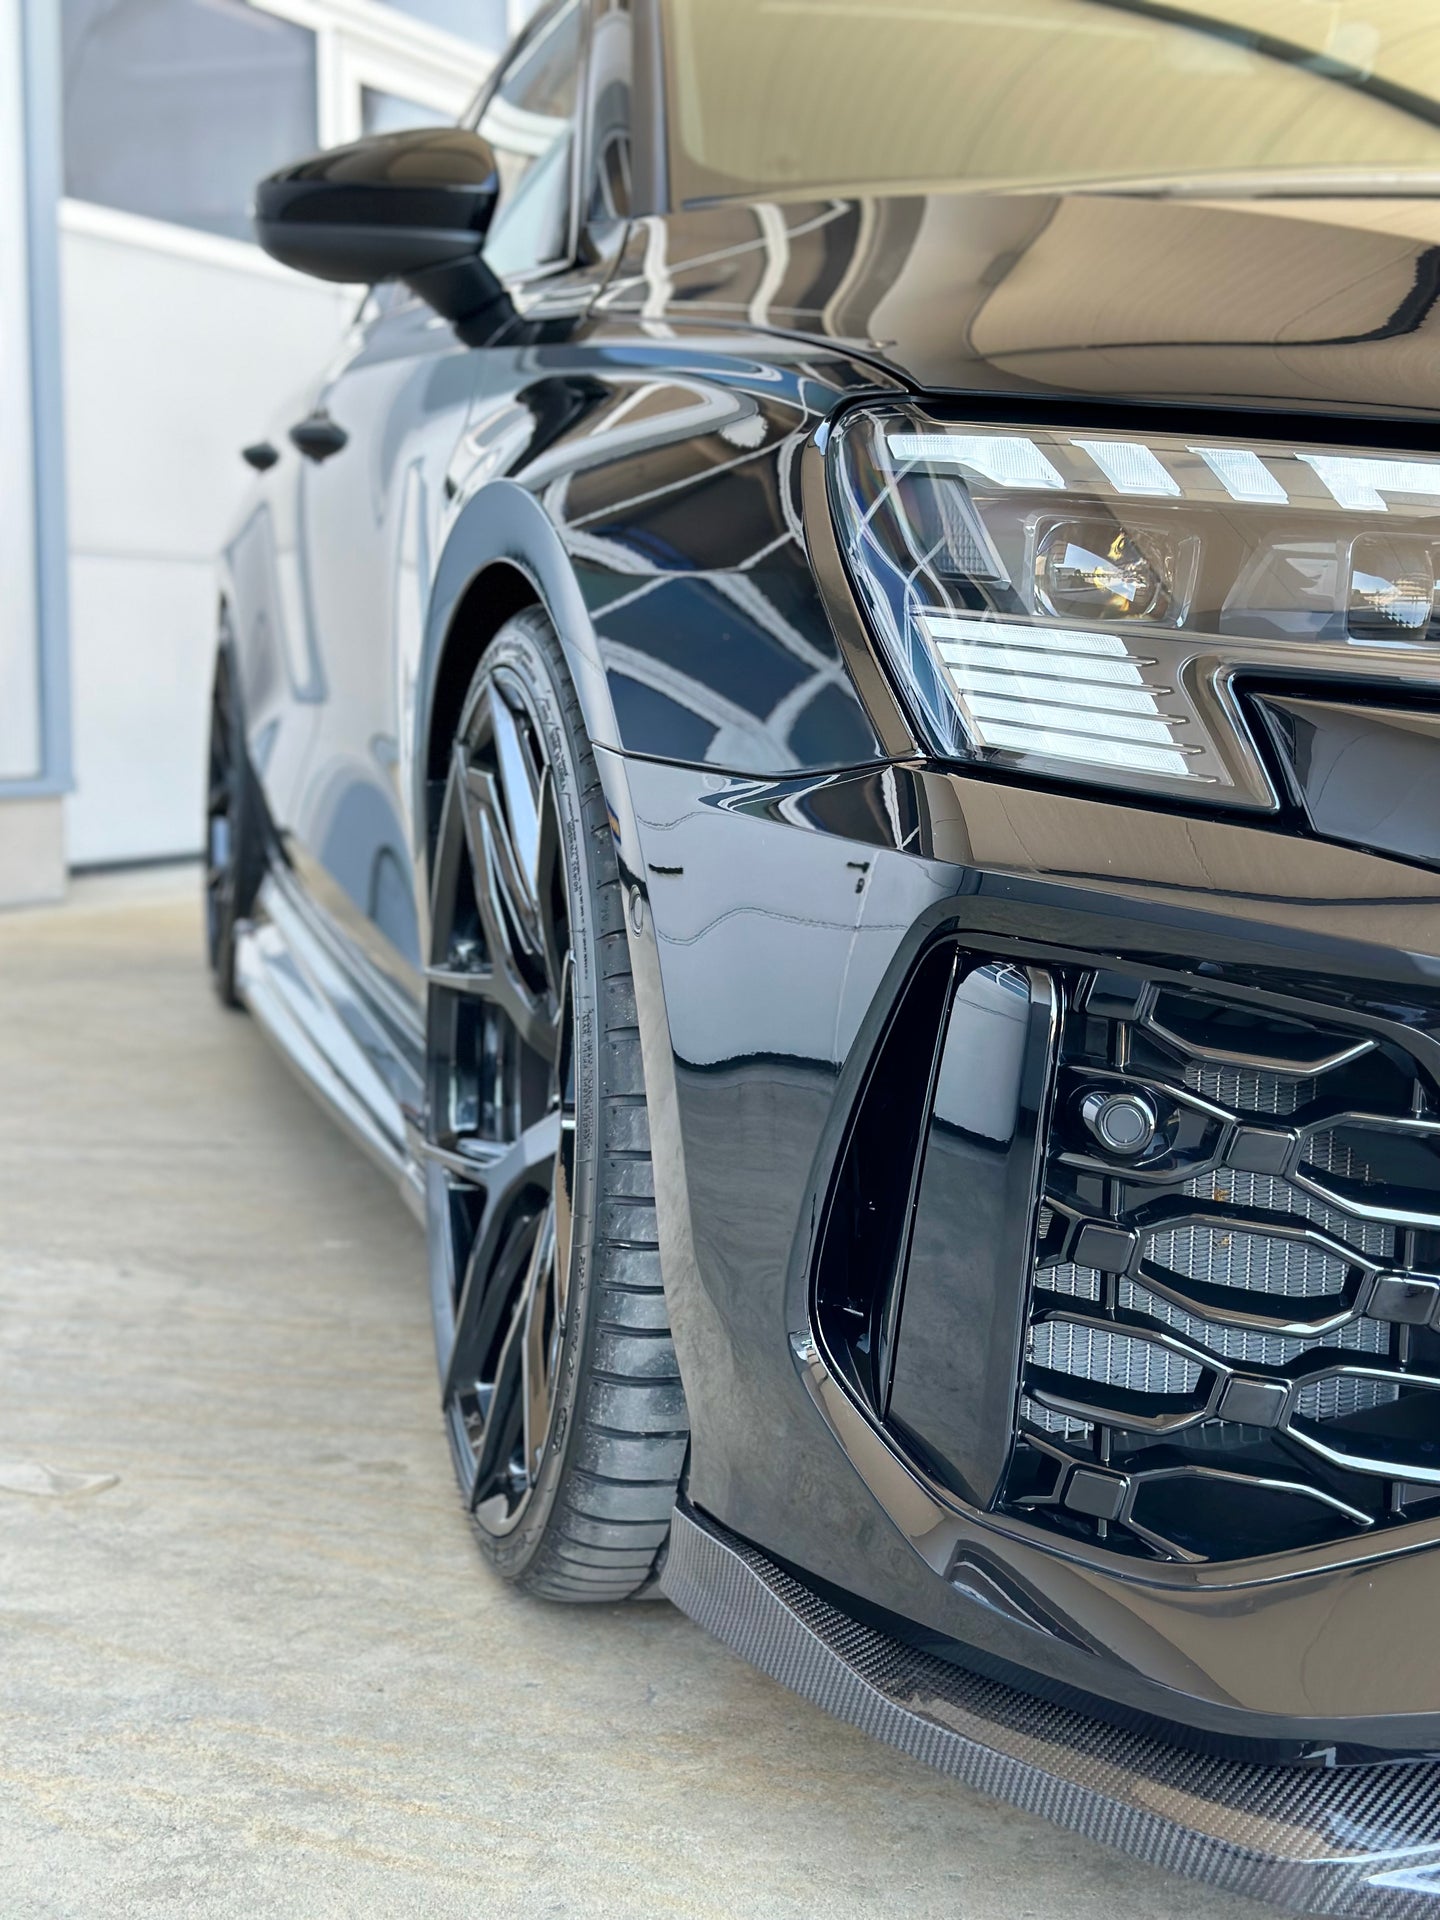 URBAN Audi RS3 8Y Frontlip Carbon (8582619660579)